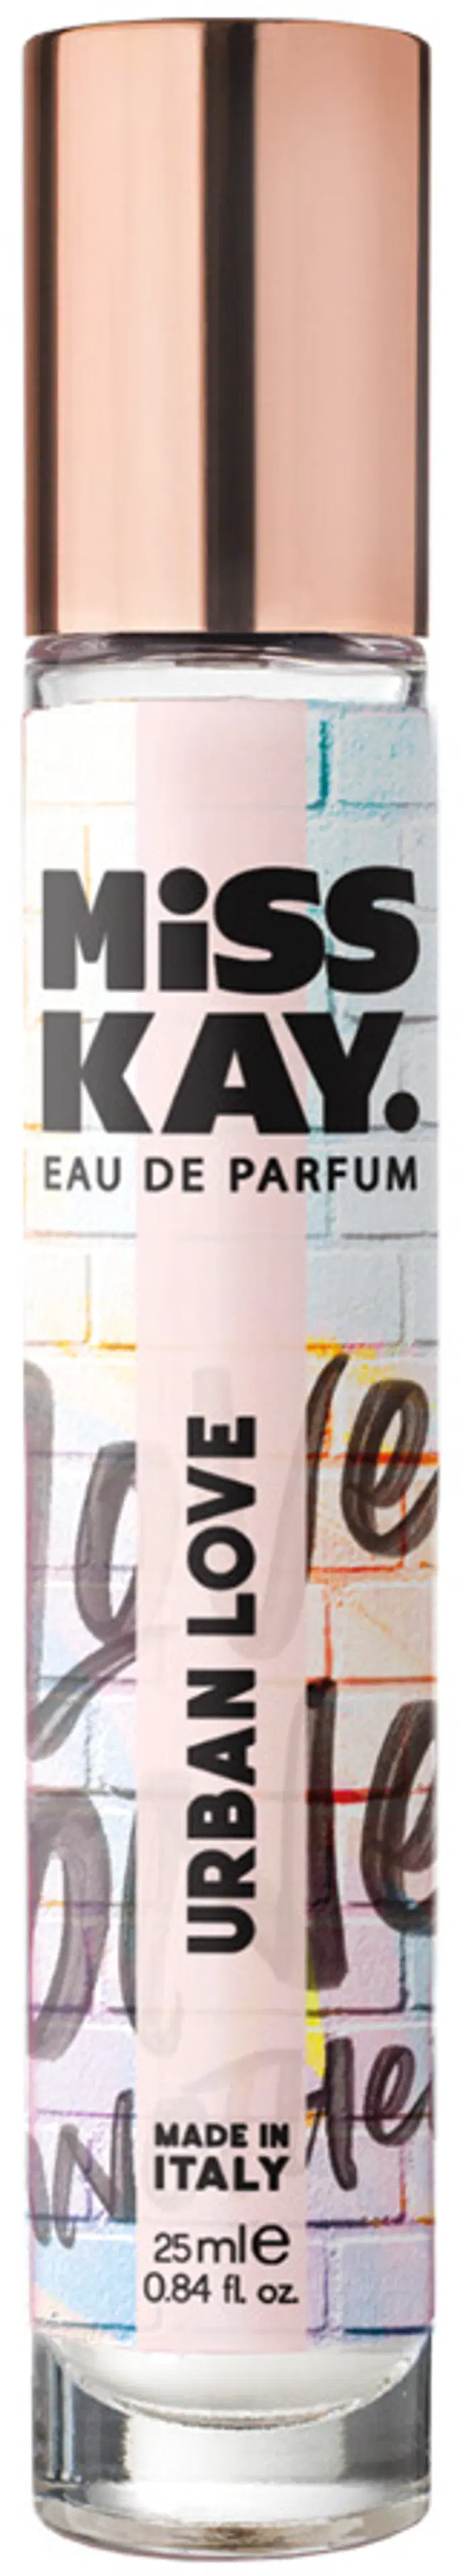 Miss Kay Urban Love EdP tuoksu 24,5 ml